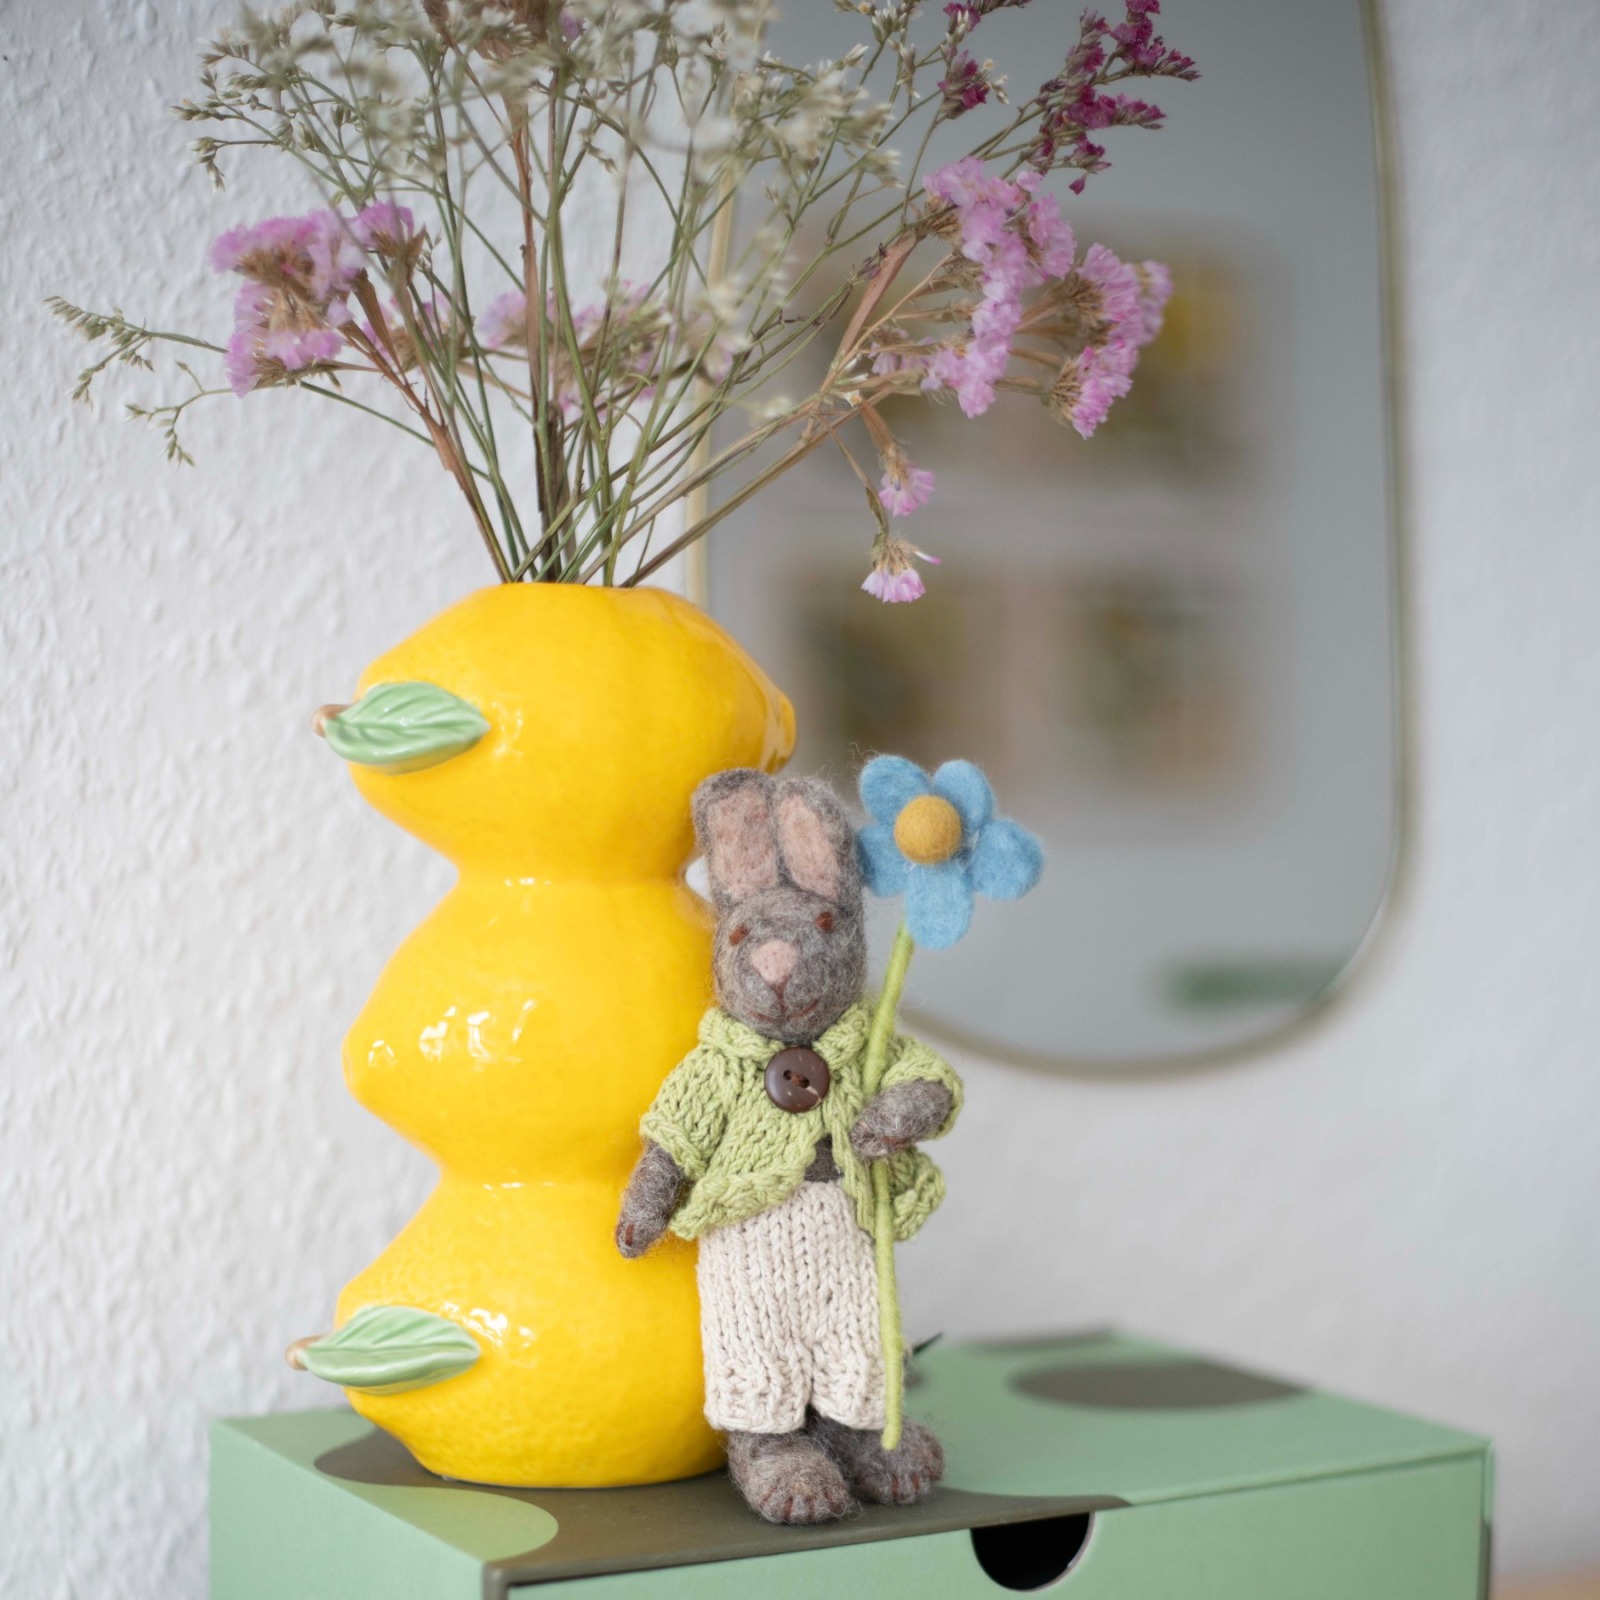 Handgefilzte Hasen mit blauer Anemone - Perfekte Dekoration für Ostern und mehr 2